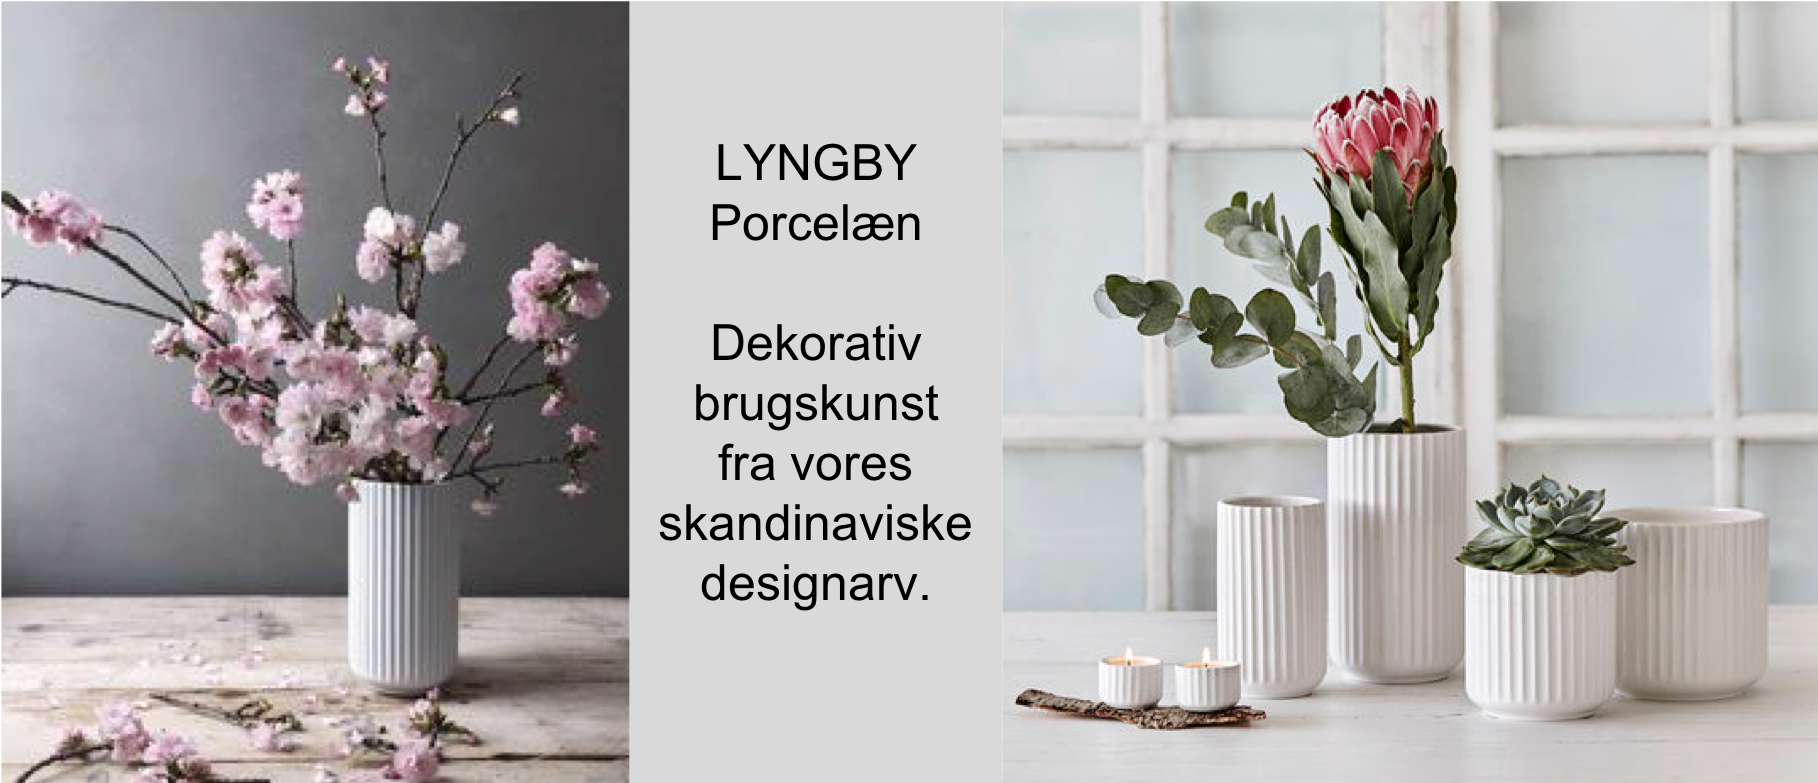 Bule Modtagelig for Dripping Køb Lyngby vaser, urtepotteskjulere og glas online - KoZmo Design Store